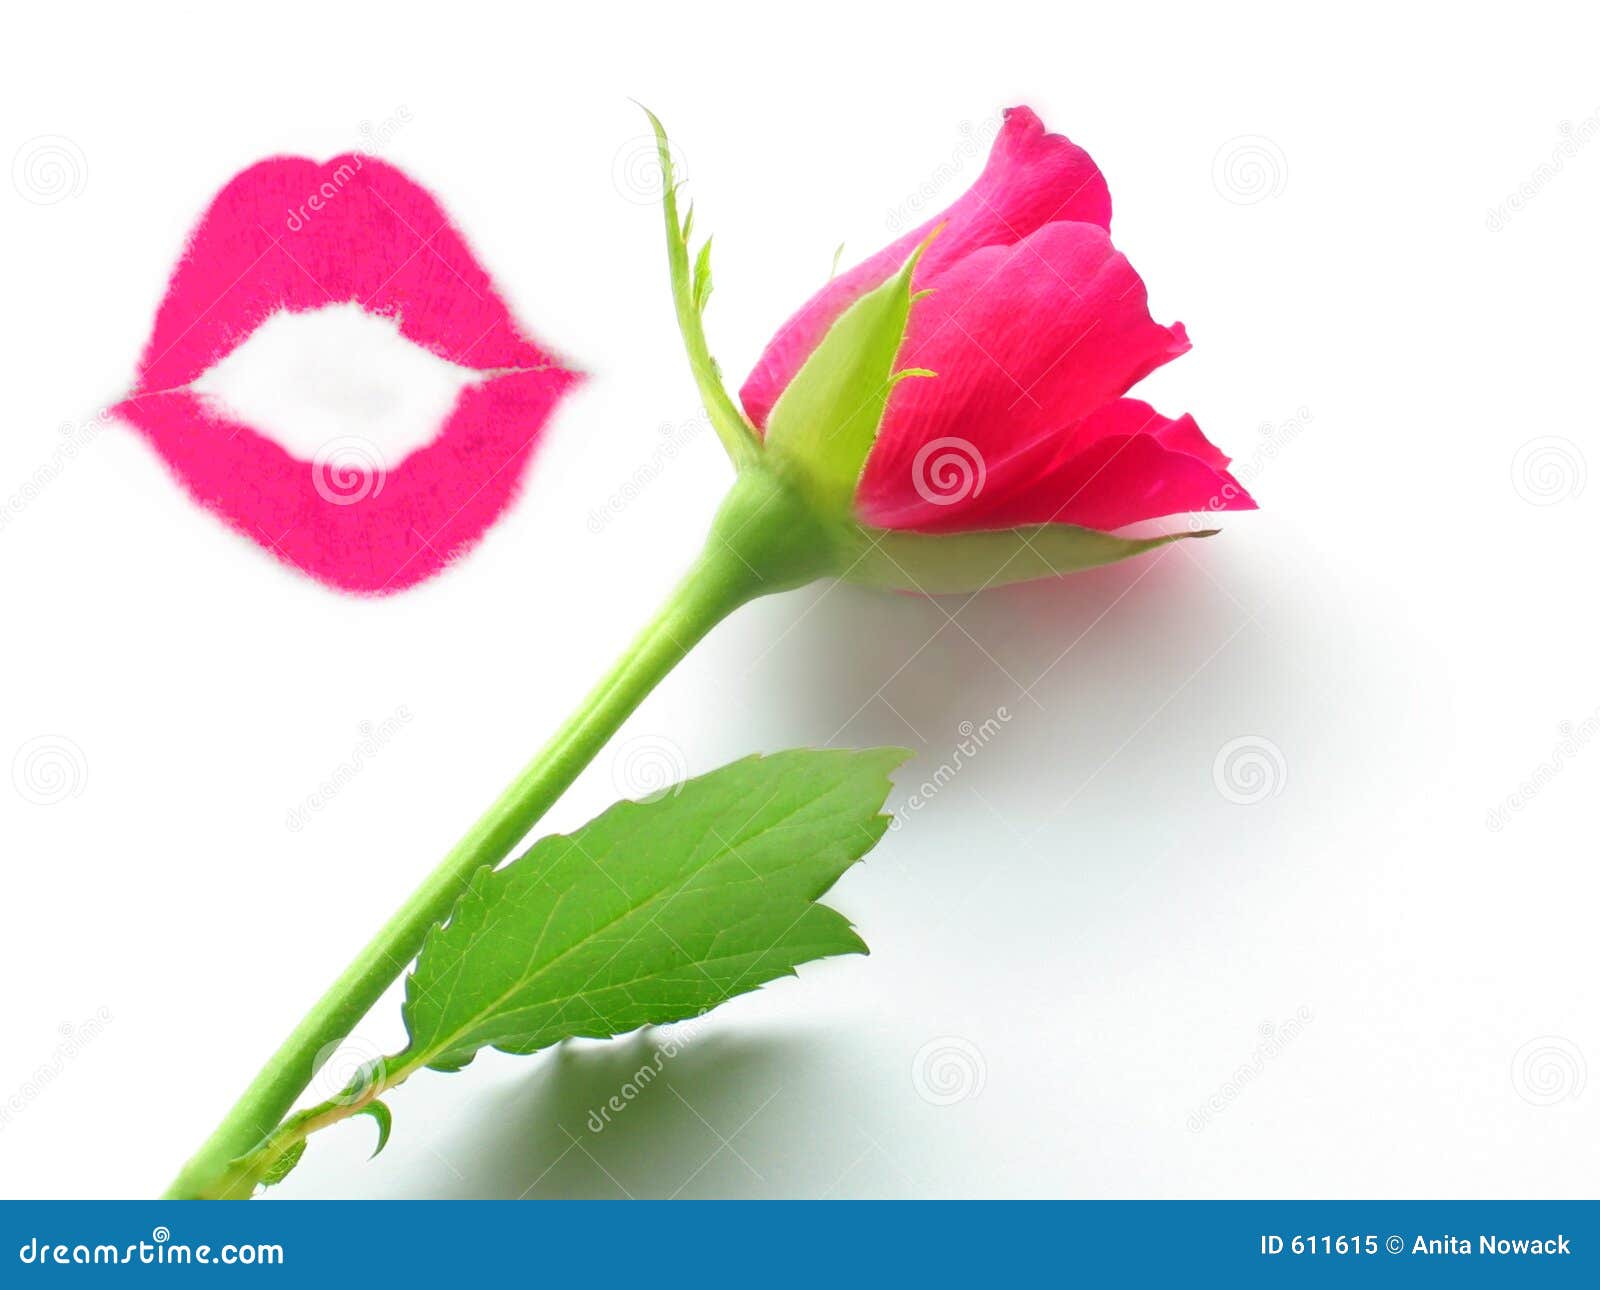 beijo-e-uma-rosa-611615.jpg